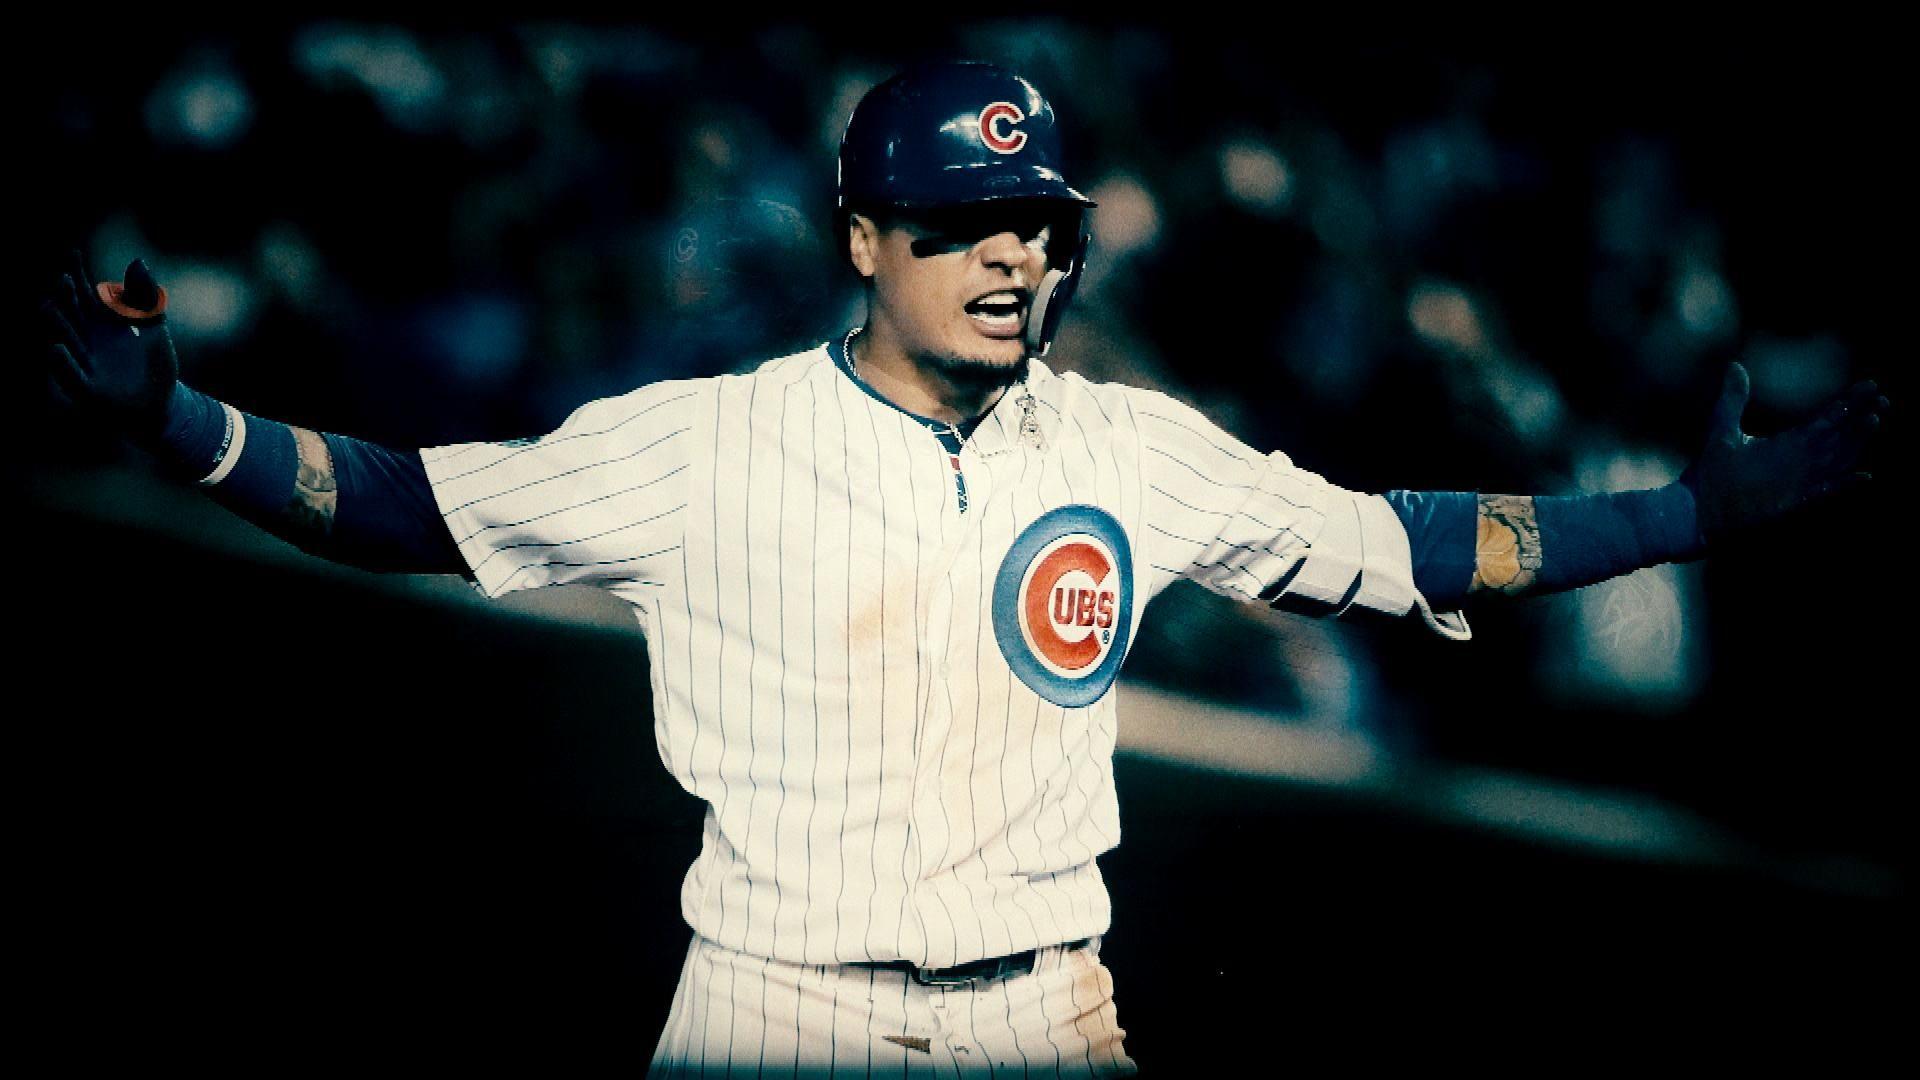 HD wallpaper: Chicago Cubs, Major League Baseball, Javier Báez